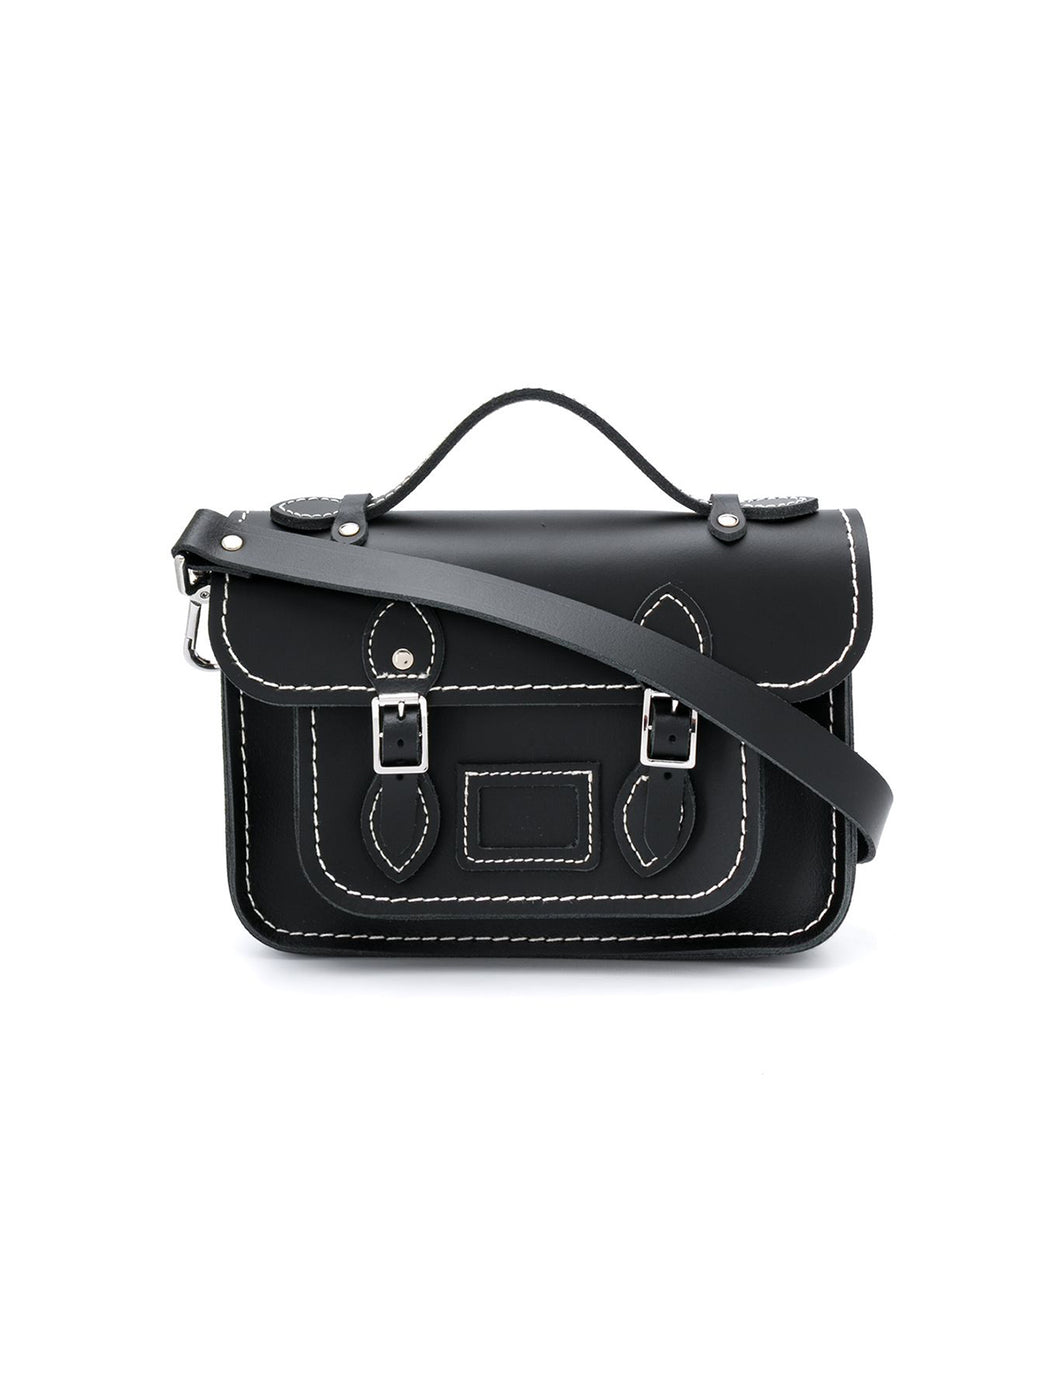 Shop Comme Des Garçons Girl X The Cambridge Satchel Company Leather Bag Online | Camargue ...